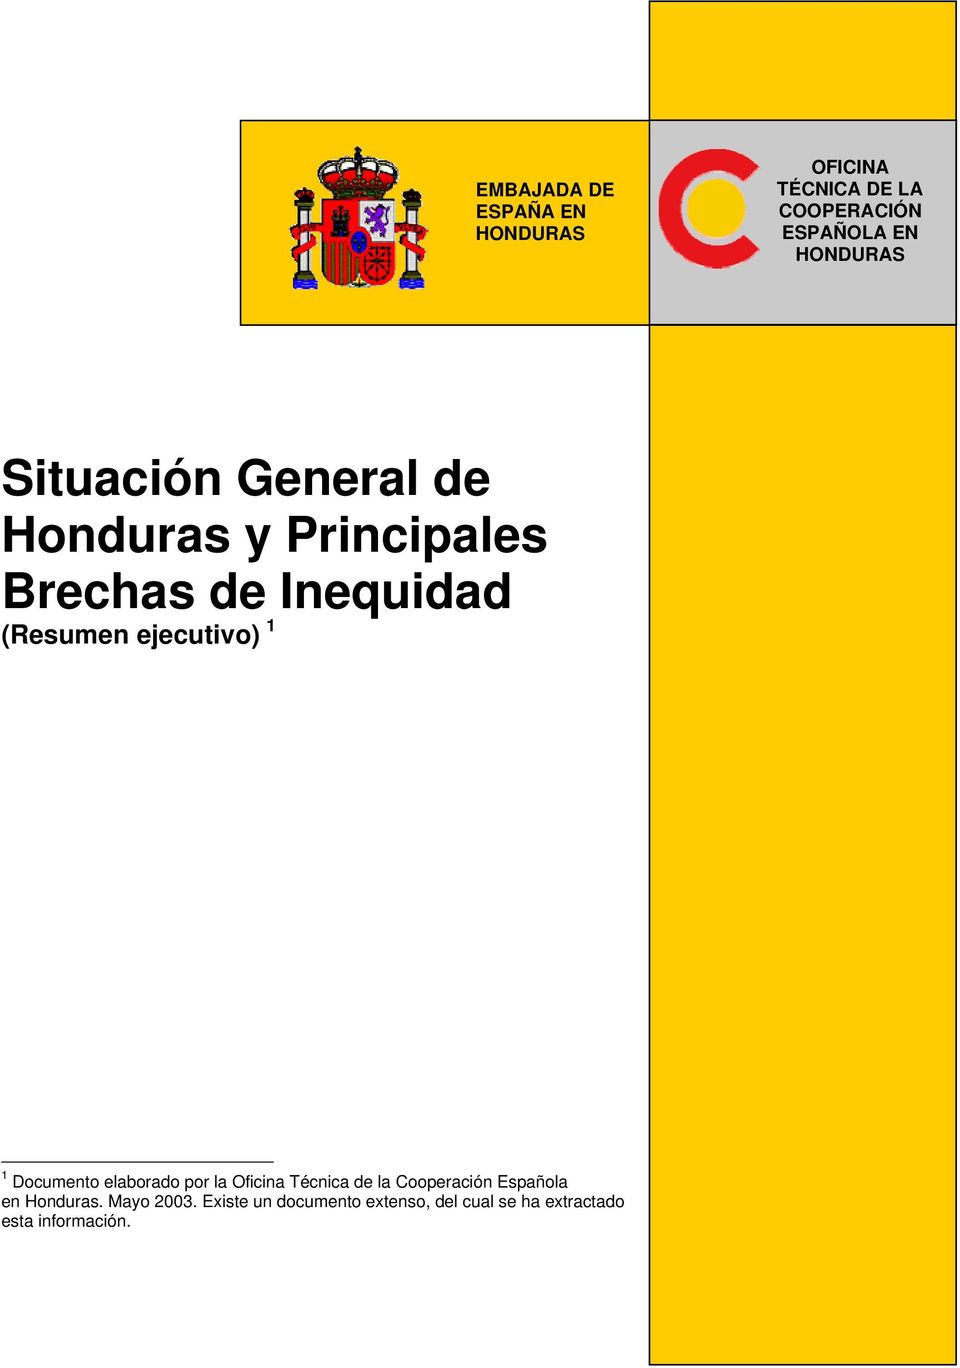 1 1 Documento elaborado por la Oficina Técnica de la Cooperación Española en Honduras.